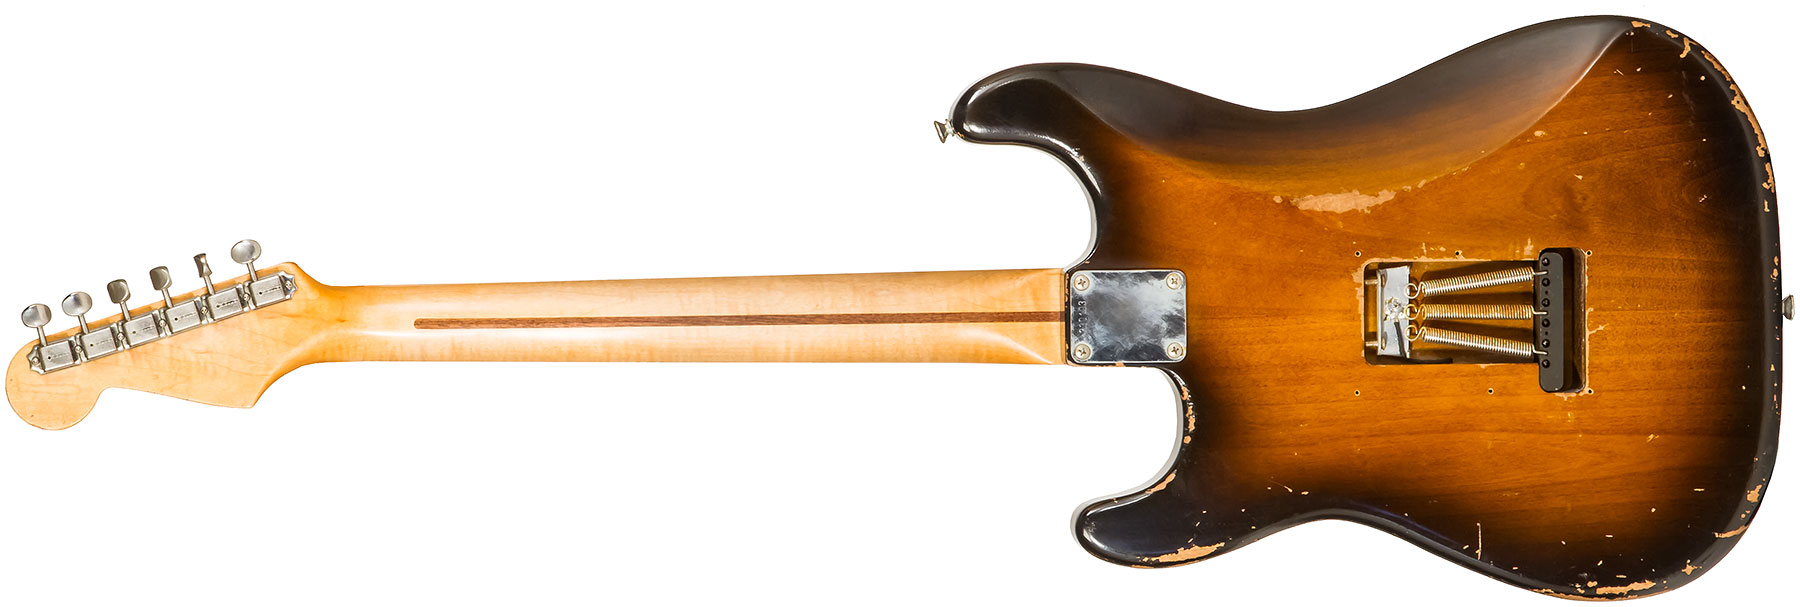 Rebelrelic S-series 54 3s Trem Mn #230103 - Medium Aged 2-tone Sunburst - Elektrische gitaar in Str-vorm - Variation 1